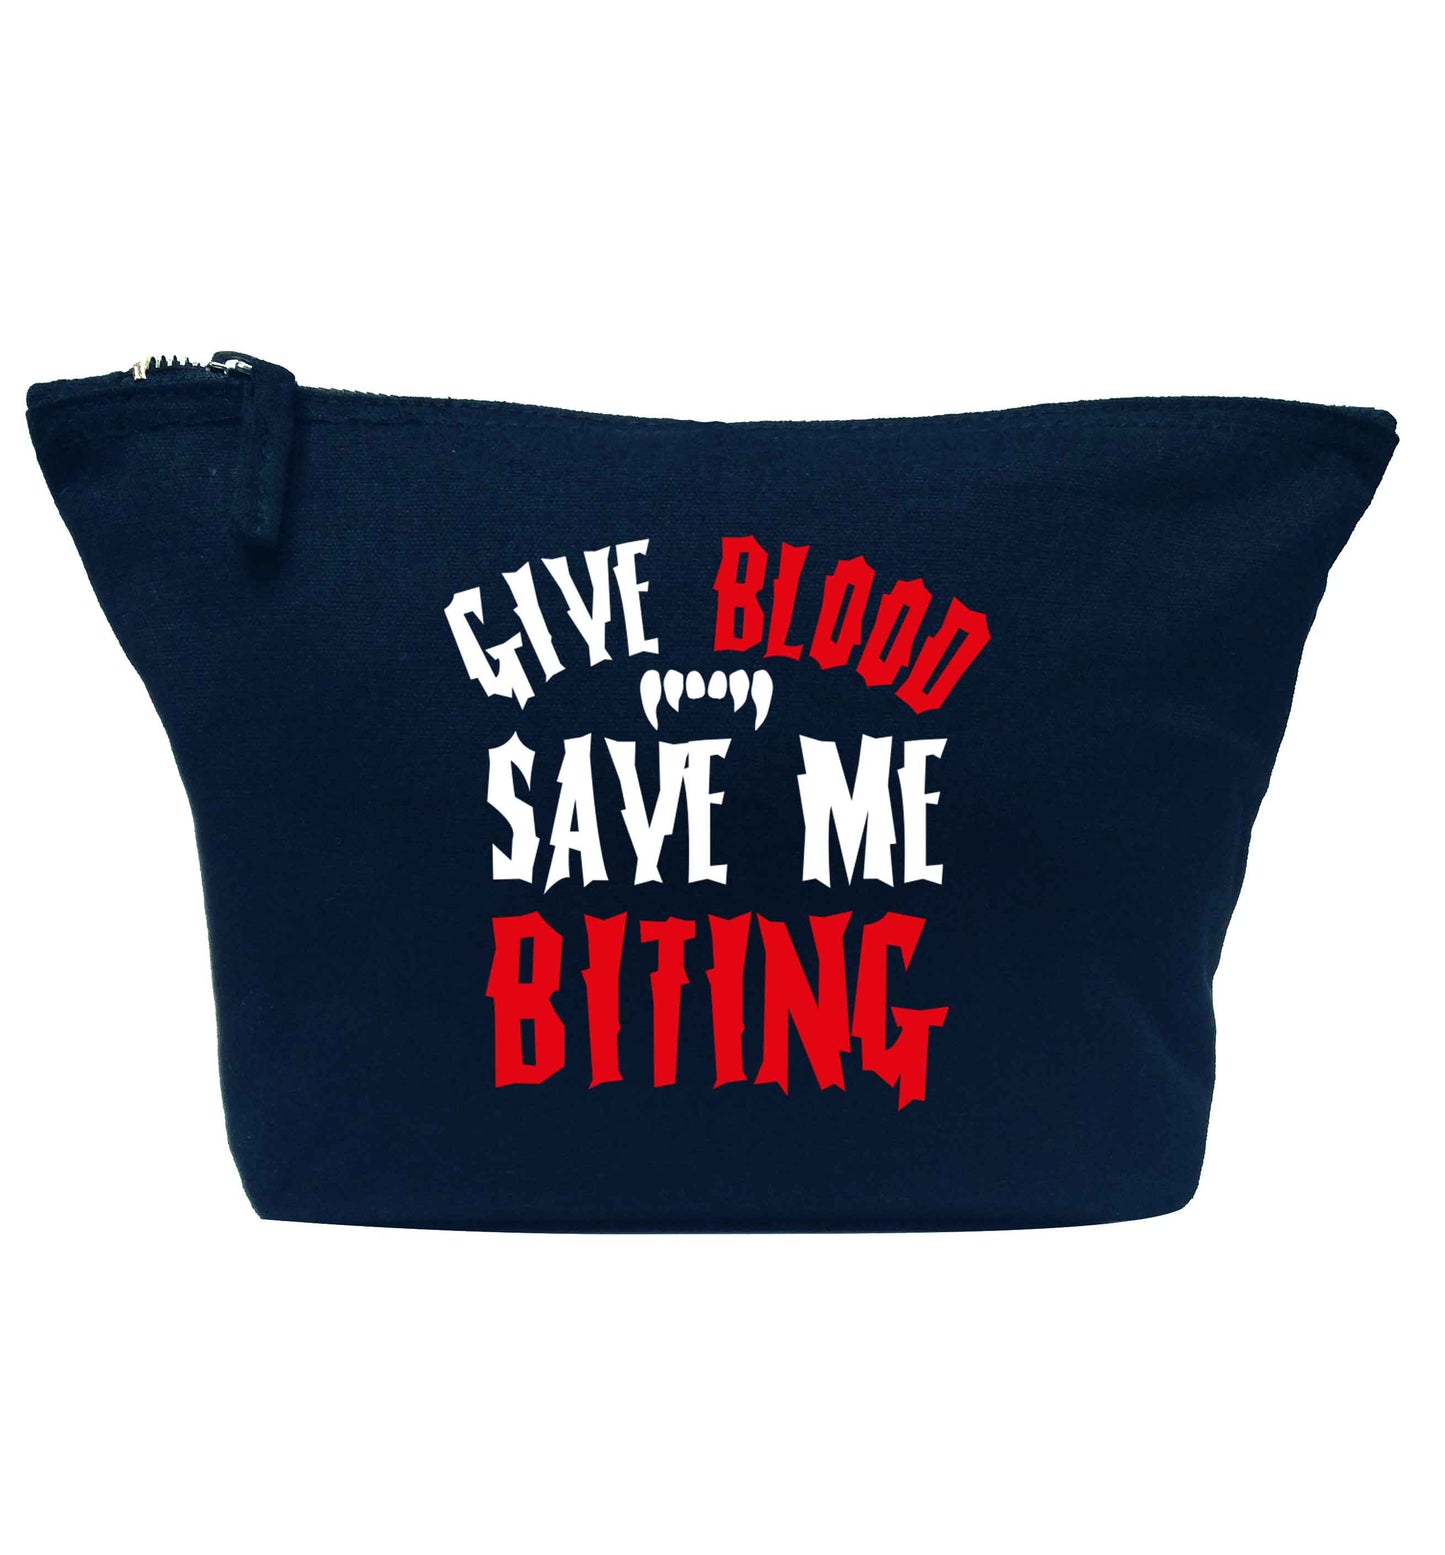 Give blood save me biting navy makeup bag